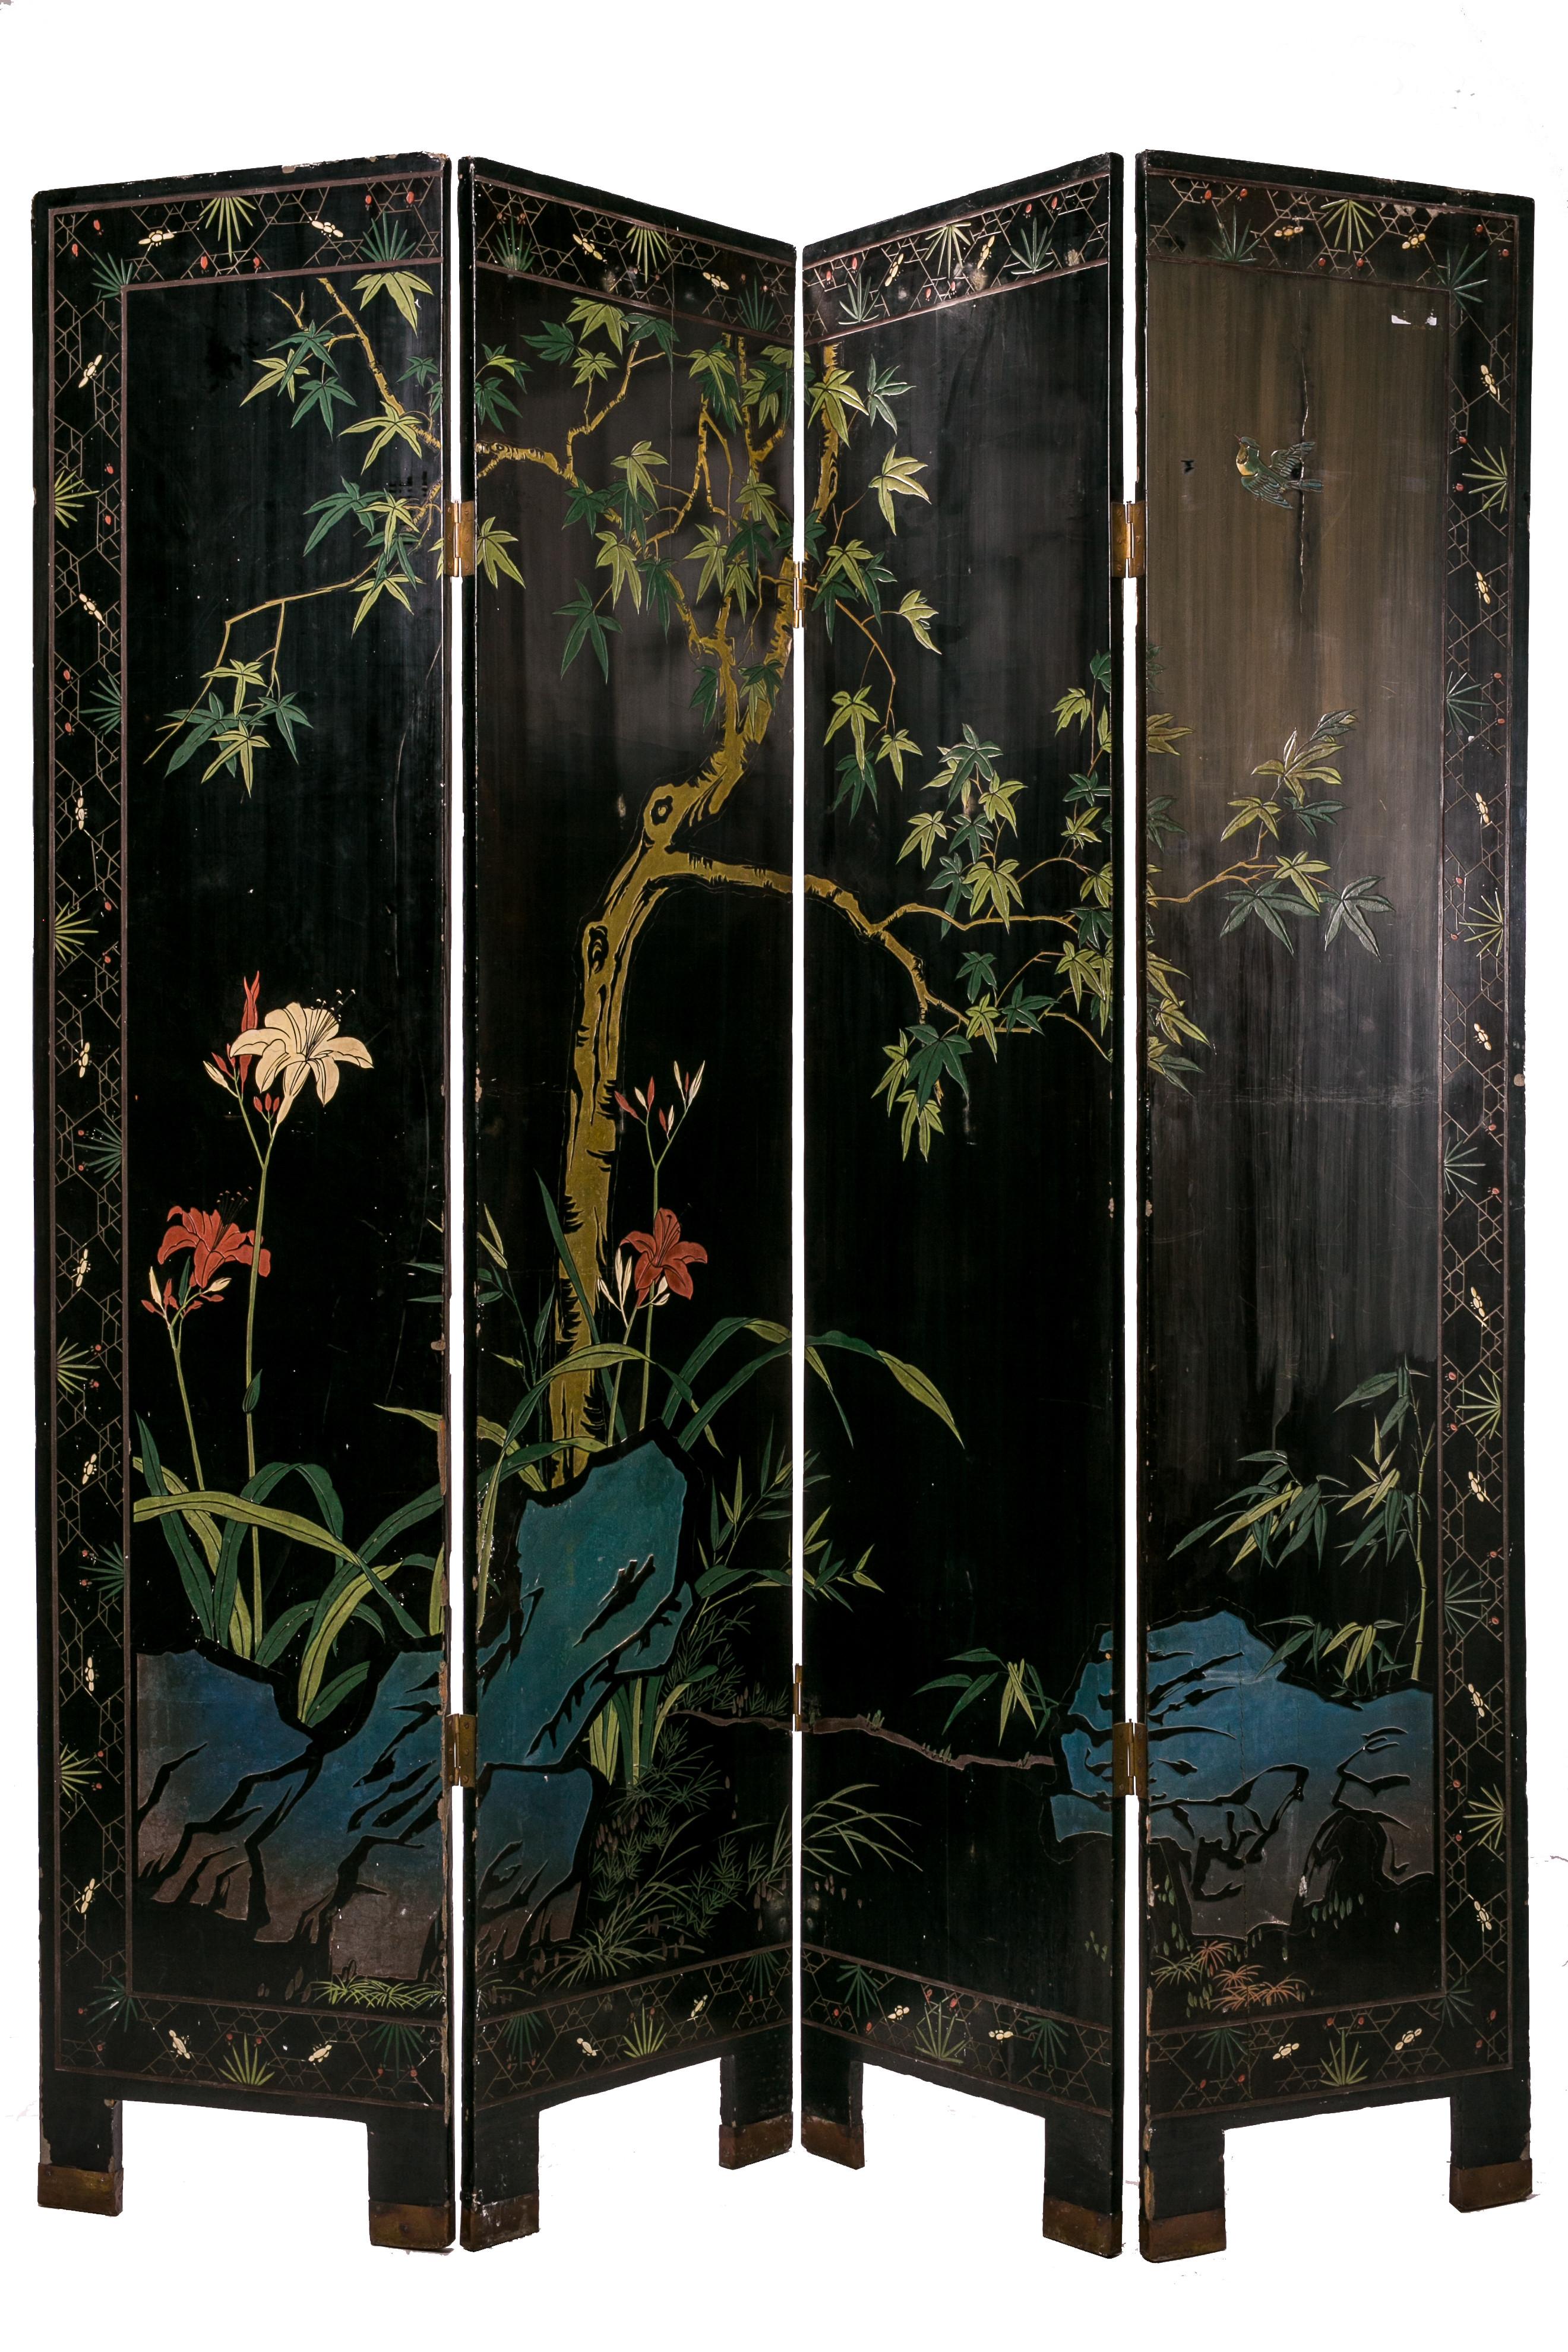 Eleganter Paravent aus japanischem Lack mit Szenen aus dem kaiserlichen Leben.
Hergestellt mit 4 Türen aus Holz und Lack, auch auf der Rückseite bemalt.
Zeitraum: frühe 1900er Jahre
Maße: L. cm 160 - H. cm 184 

(D,R)
Code: 10776.